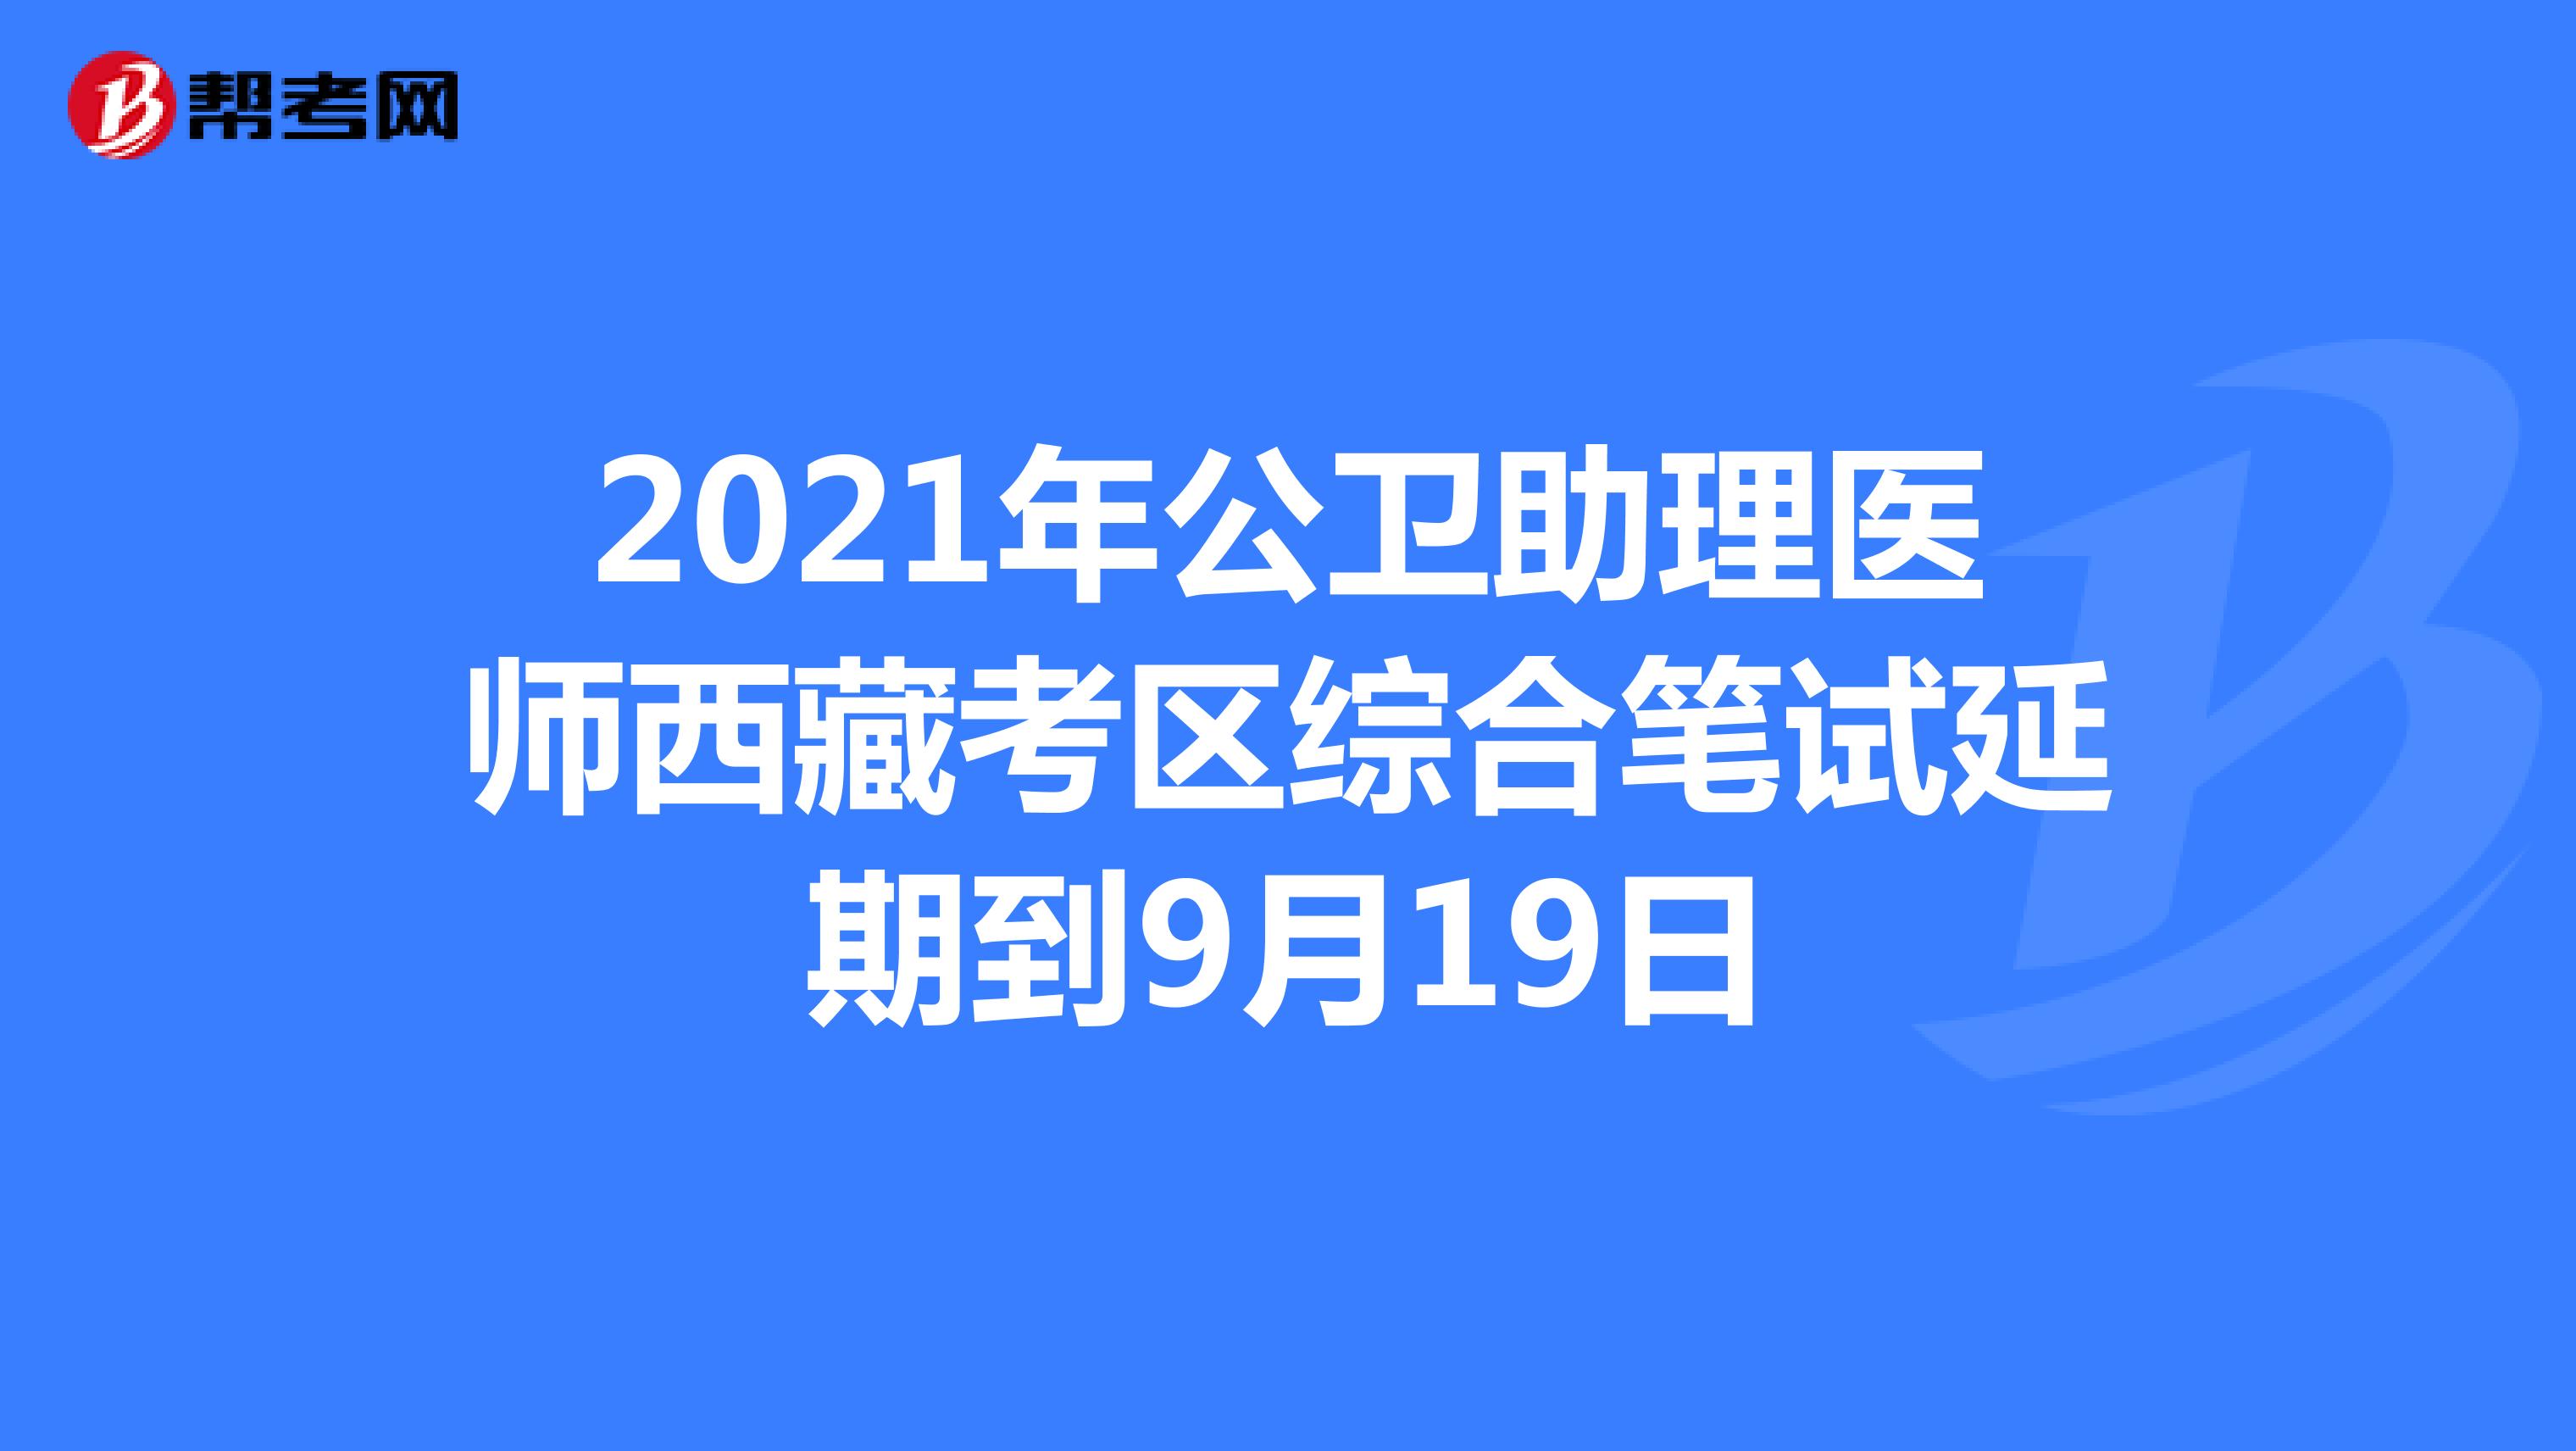 2021年公卫助理医师西藏考区综合笔试延期到9月19日